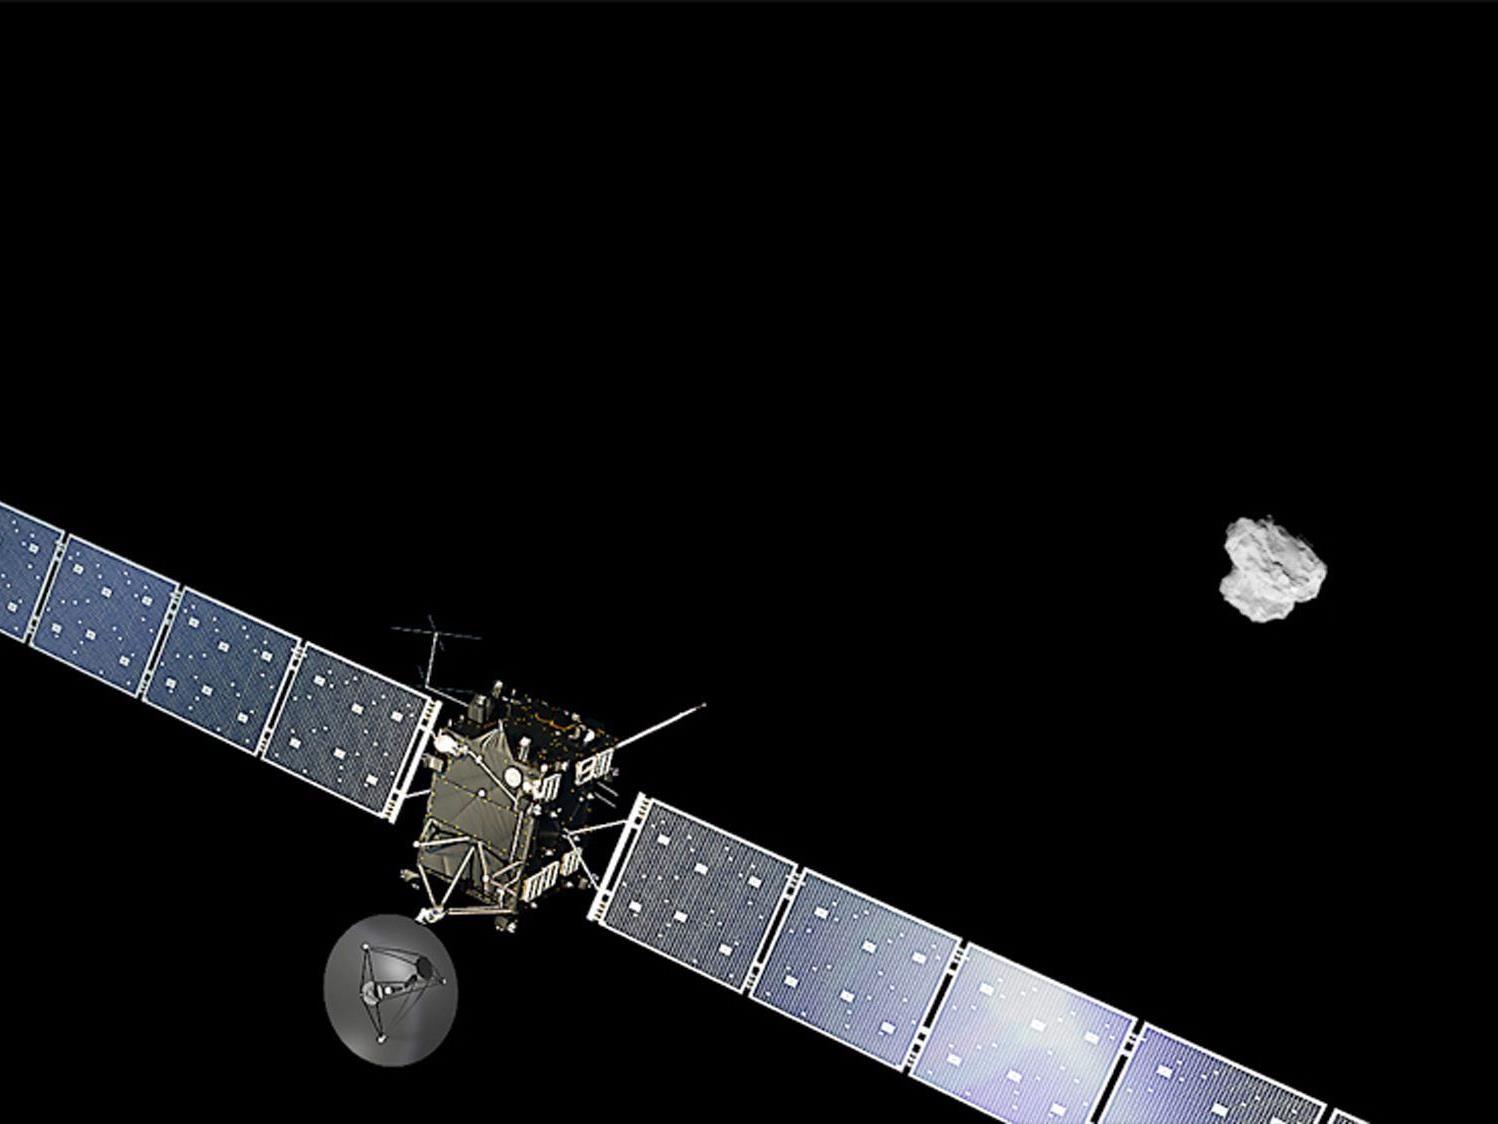 "Rosetta" begann Manöver zum Eintritt in Kometenumlaufbahn